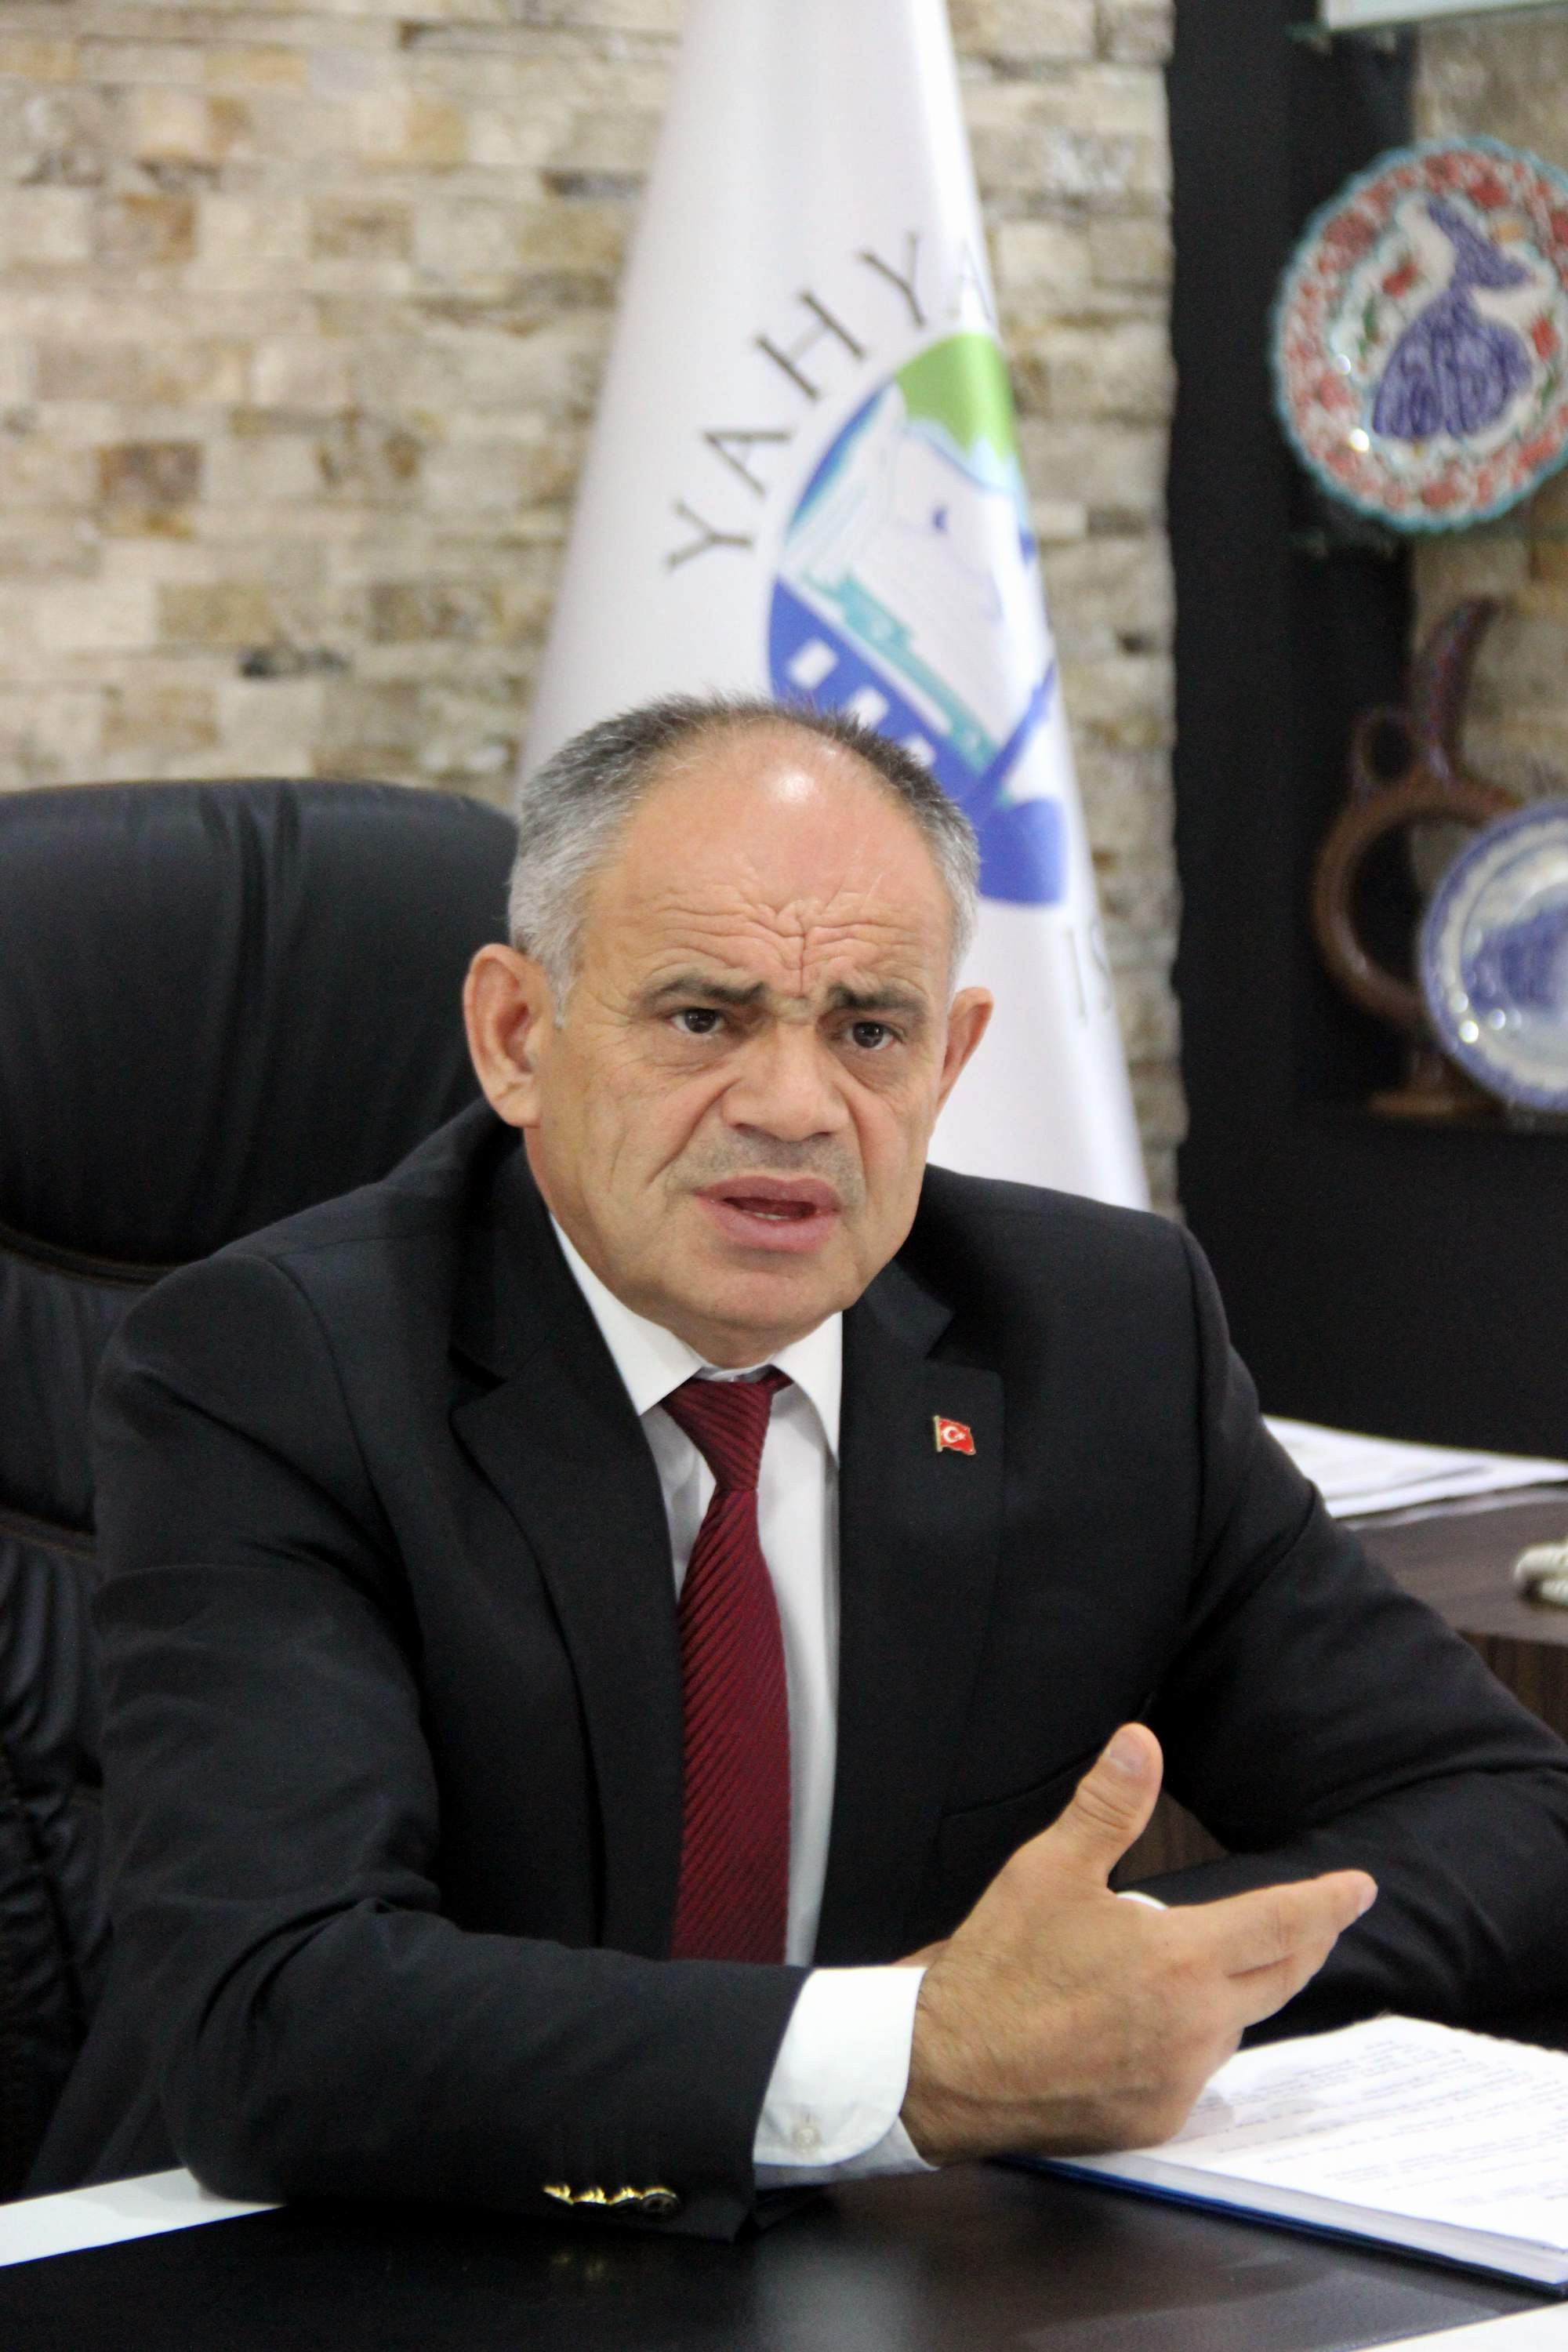 Yahyalı Belediye Başkanı Esat Öztürk: “2017’de 100 milyonluk yatırım var”